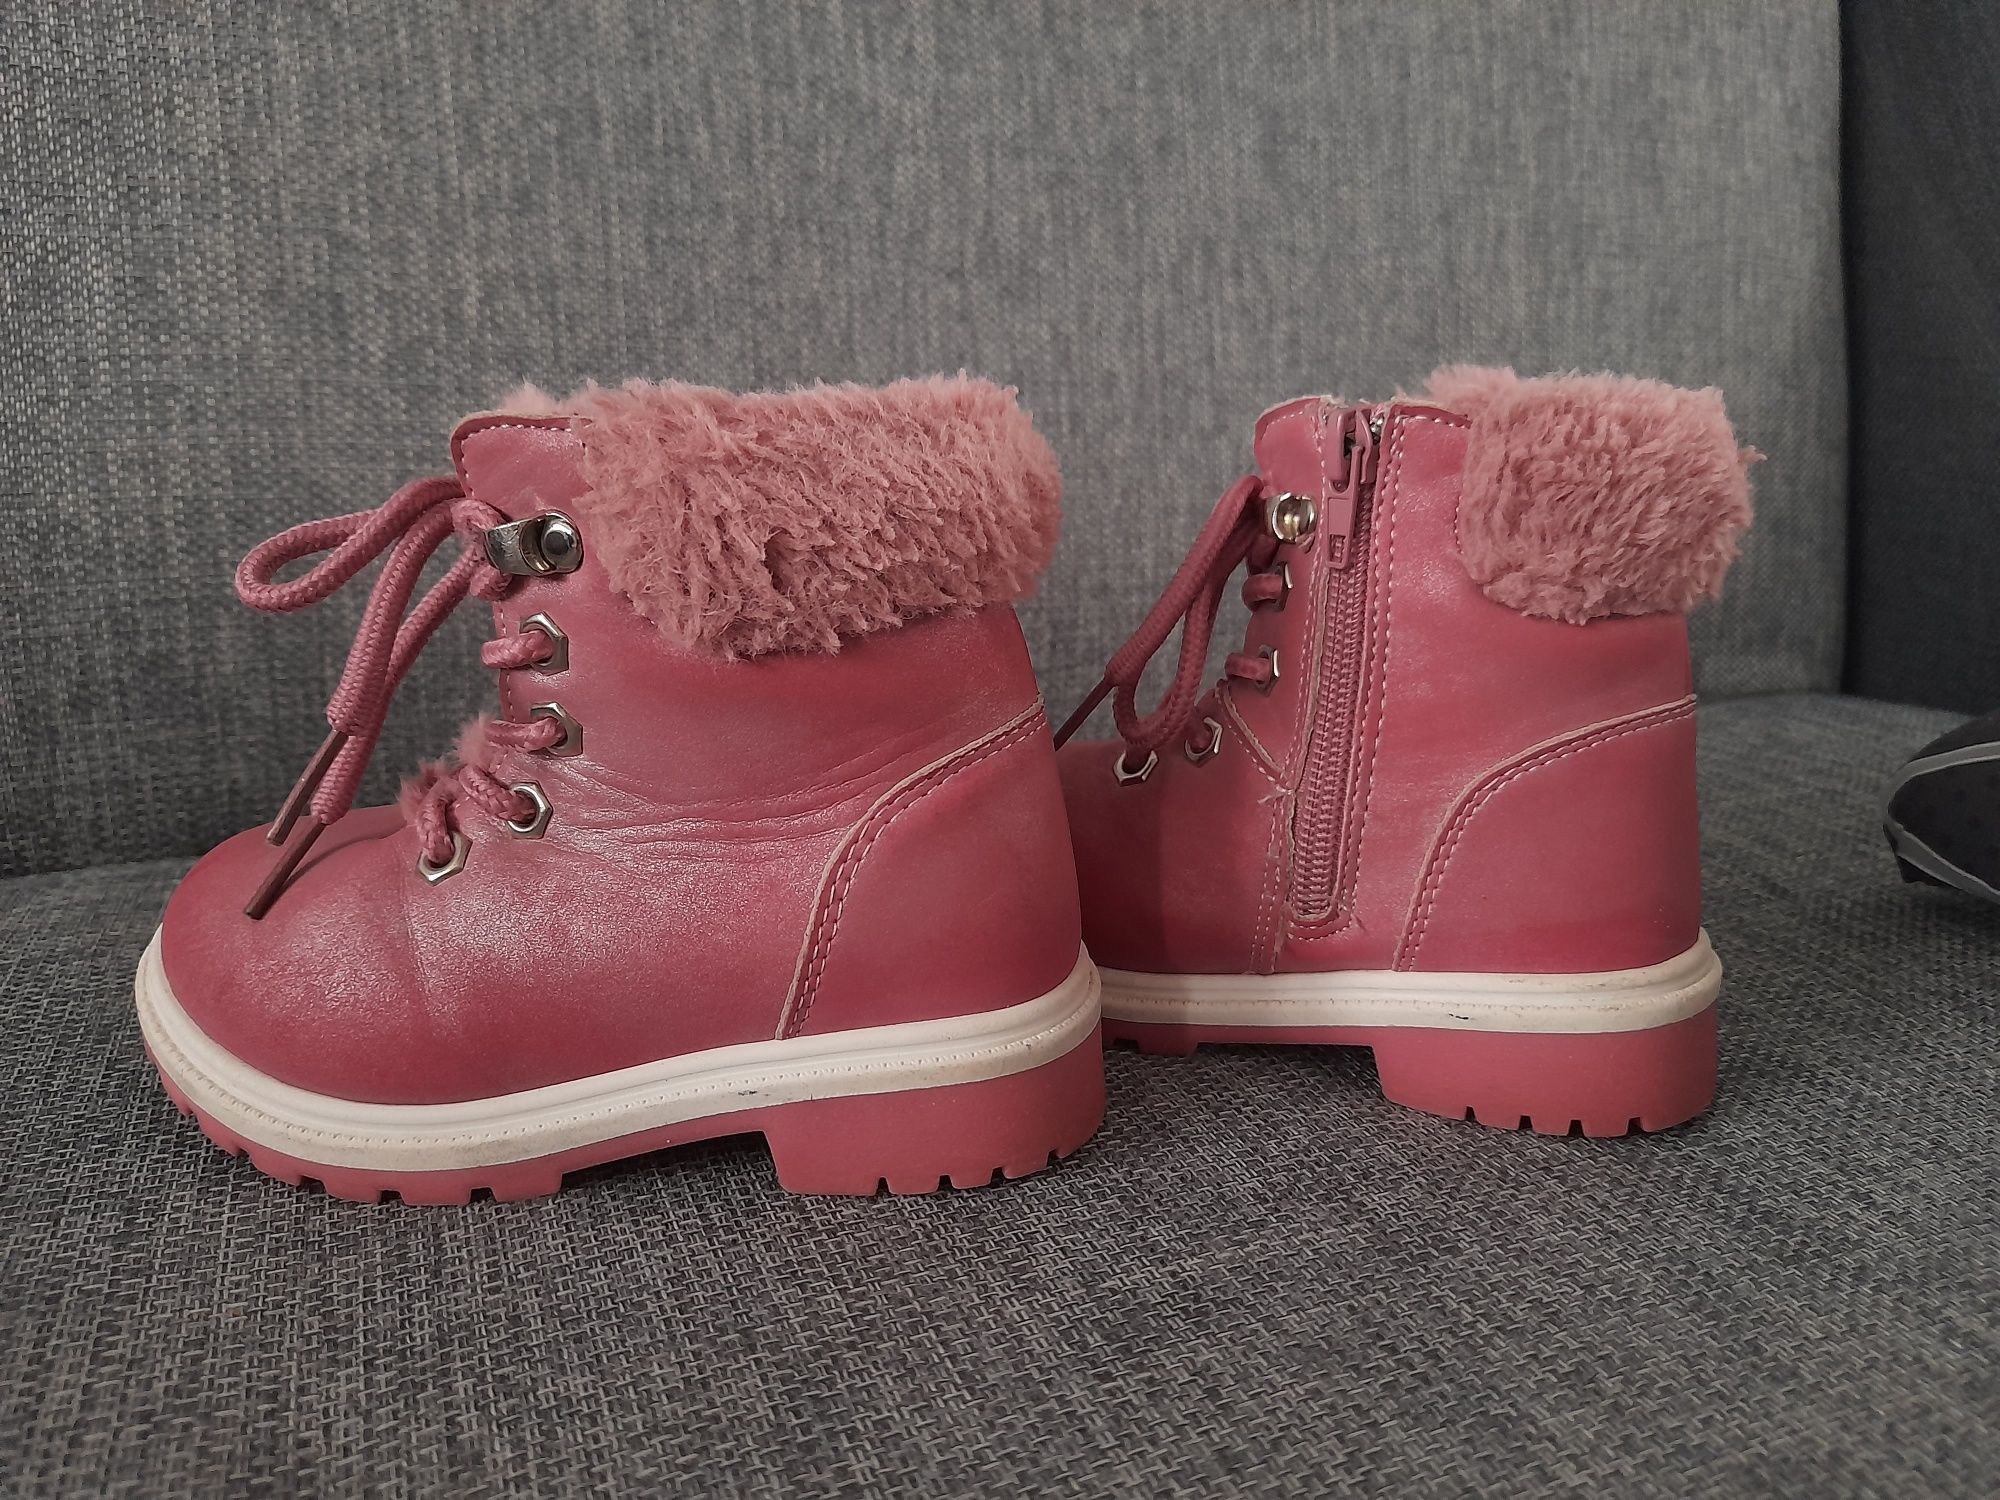 Buty zimowe dla dziewczynki - rozm. 23 - PEPCO